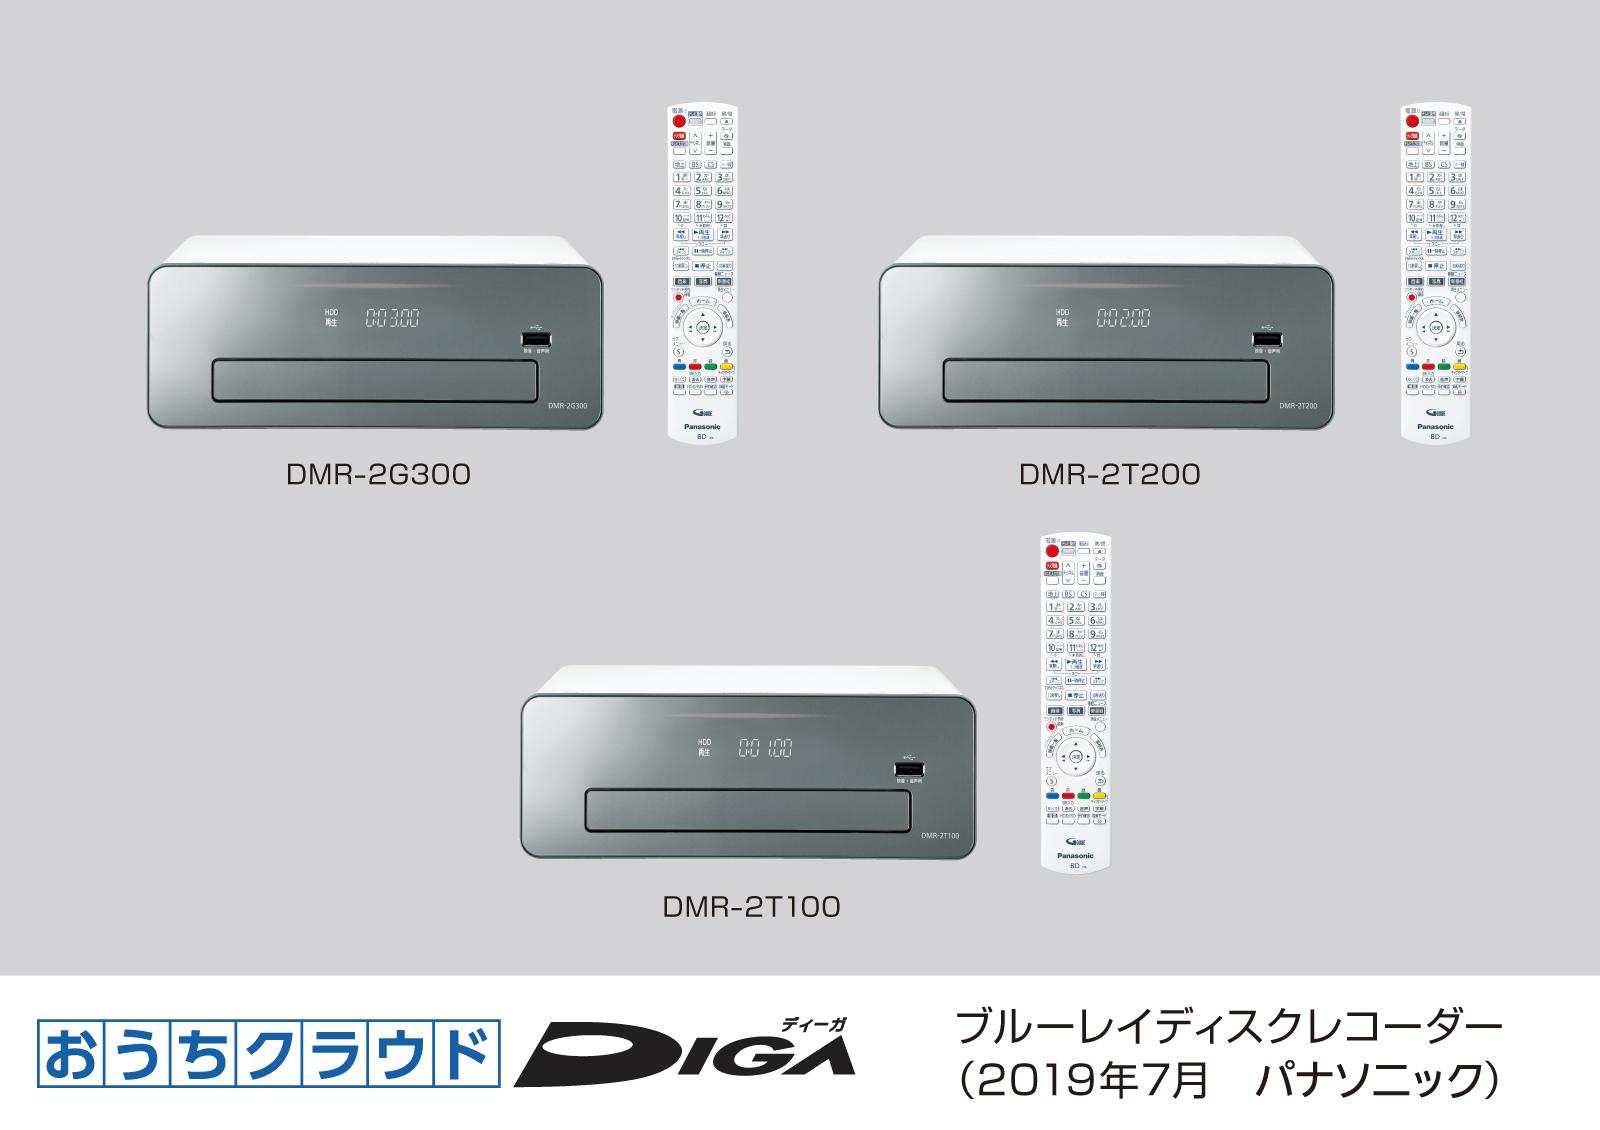 ブルーレイディスクレコーダー新製品おうちクラウドDIGA（ディーガ）3モデル